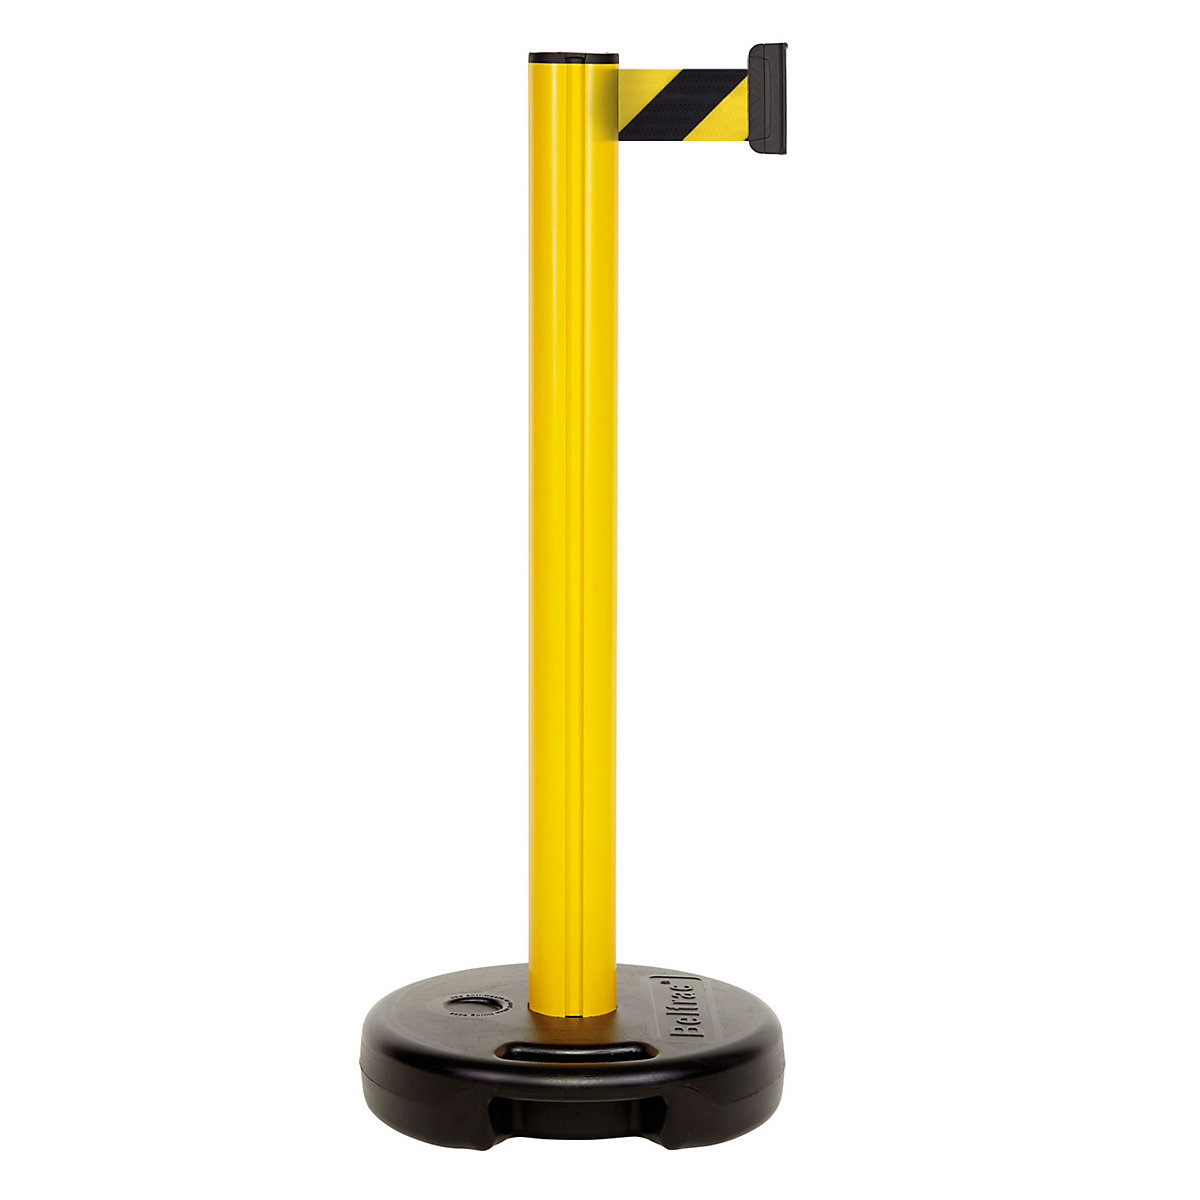 Sloupek s popruhem z plastu, max. vytažení pásu 3700 mm, žlutý sloupek, žlutočerný popruh